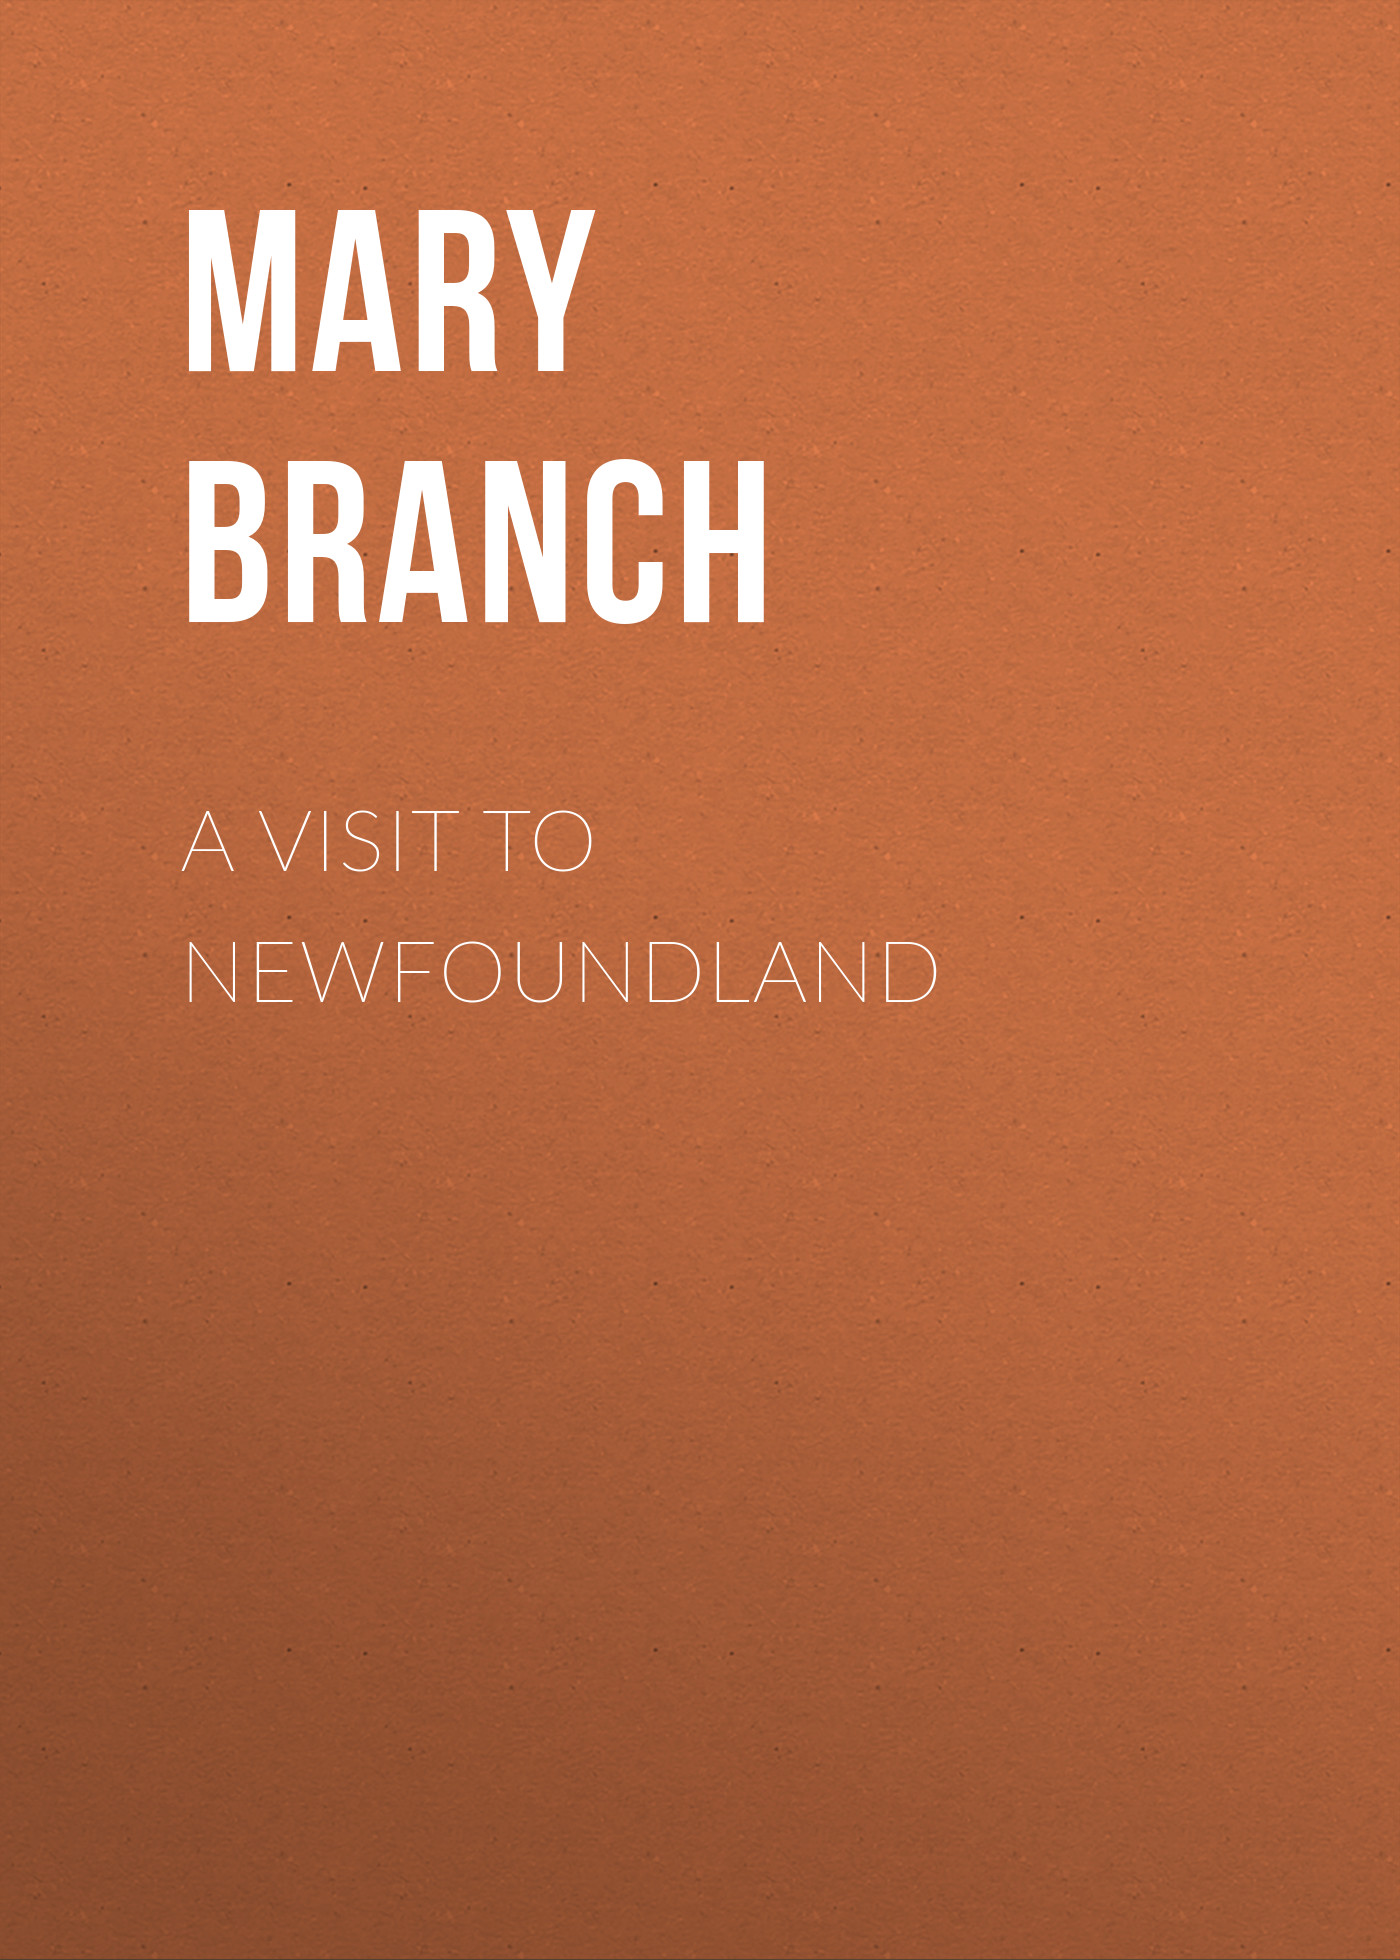 Книга A Visit to Newfoundland из серии , созданная Mary Branch, может относится к жанру Зарубежная старинная литература, Зарубежная классика. Стоимость электронной книги A Visit to Newfoundland с идентификатором 24179948 составляет 0 руб.